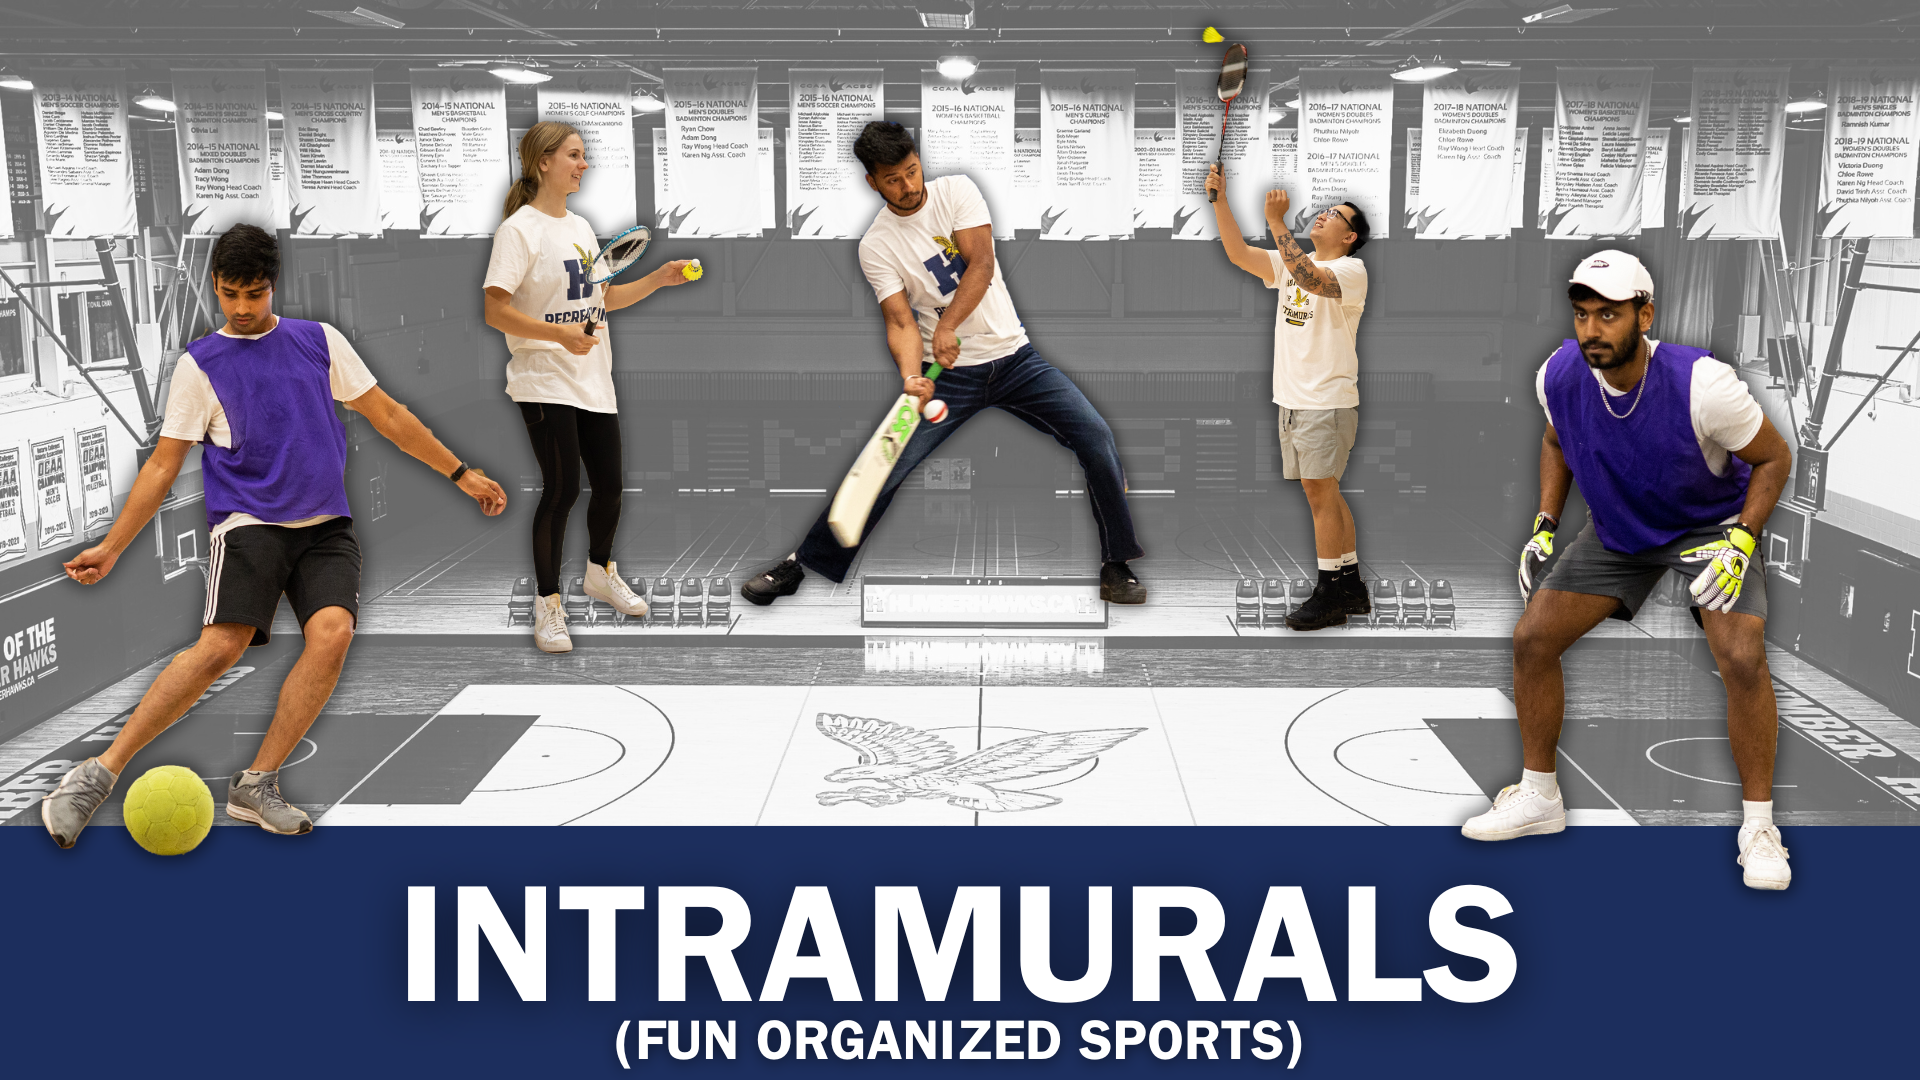 Intramurals - Fun Organized Sports